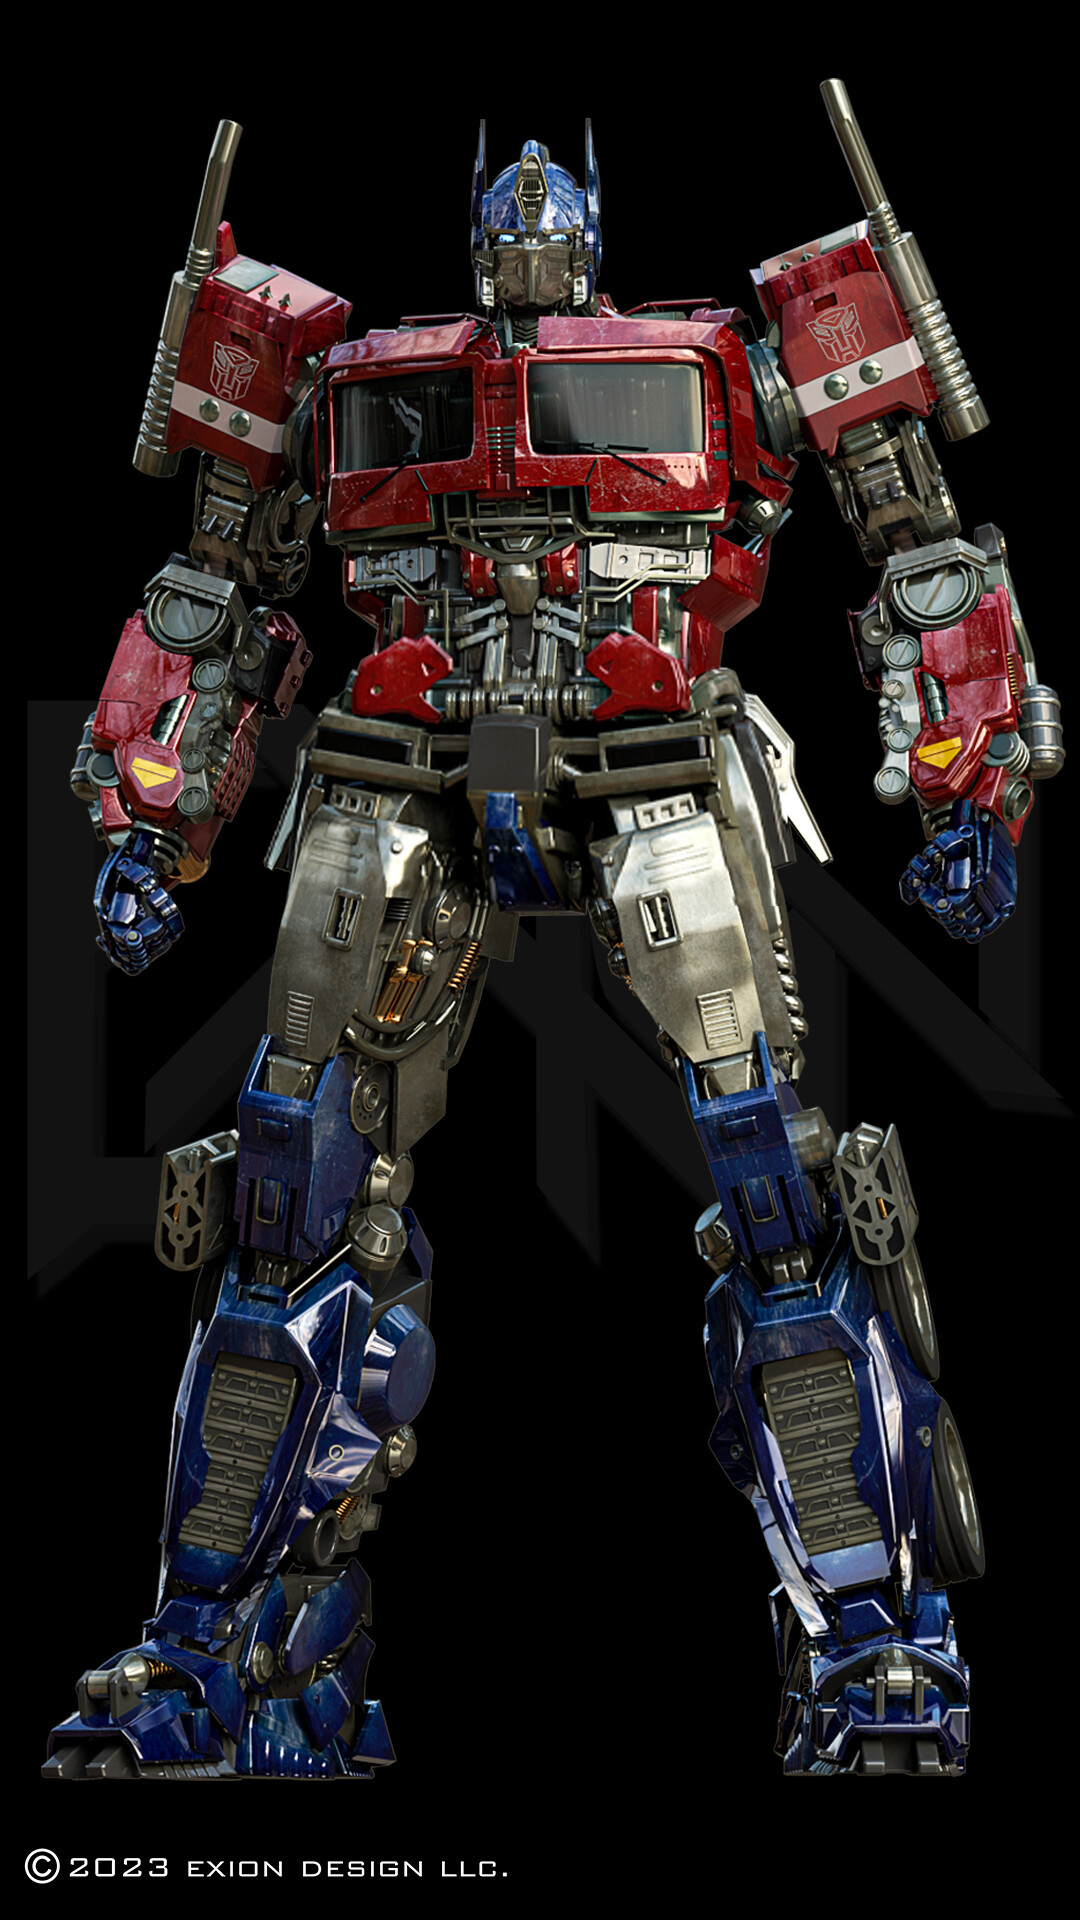 ArtStation - Transformers Prime: Optimus prime 3D Blender model